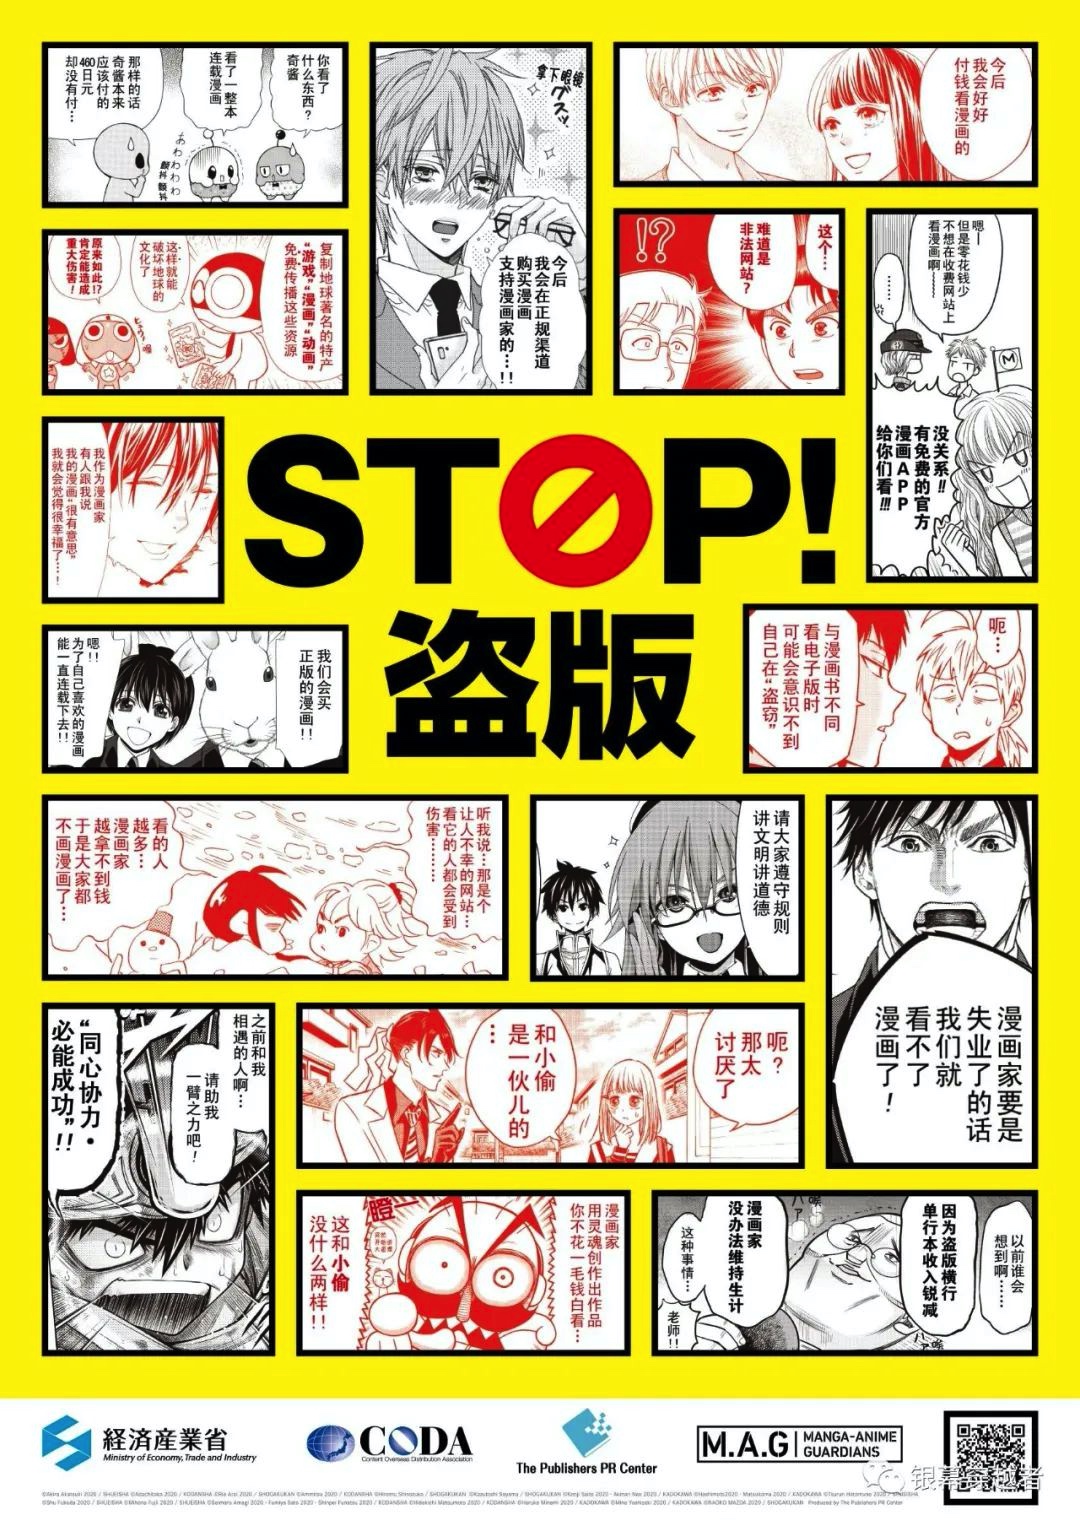 免费看正版 日本19家漫画出版社等联合打击海外盗版动漫 传媒头条 全媒体智库